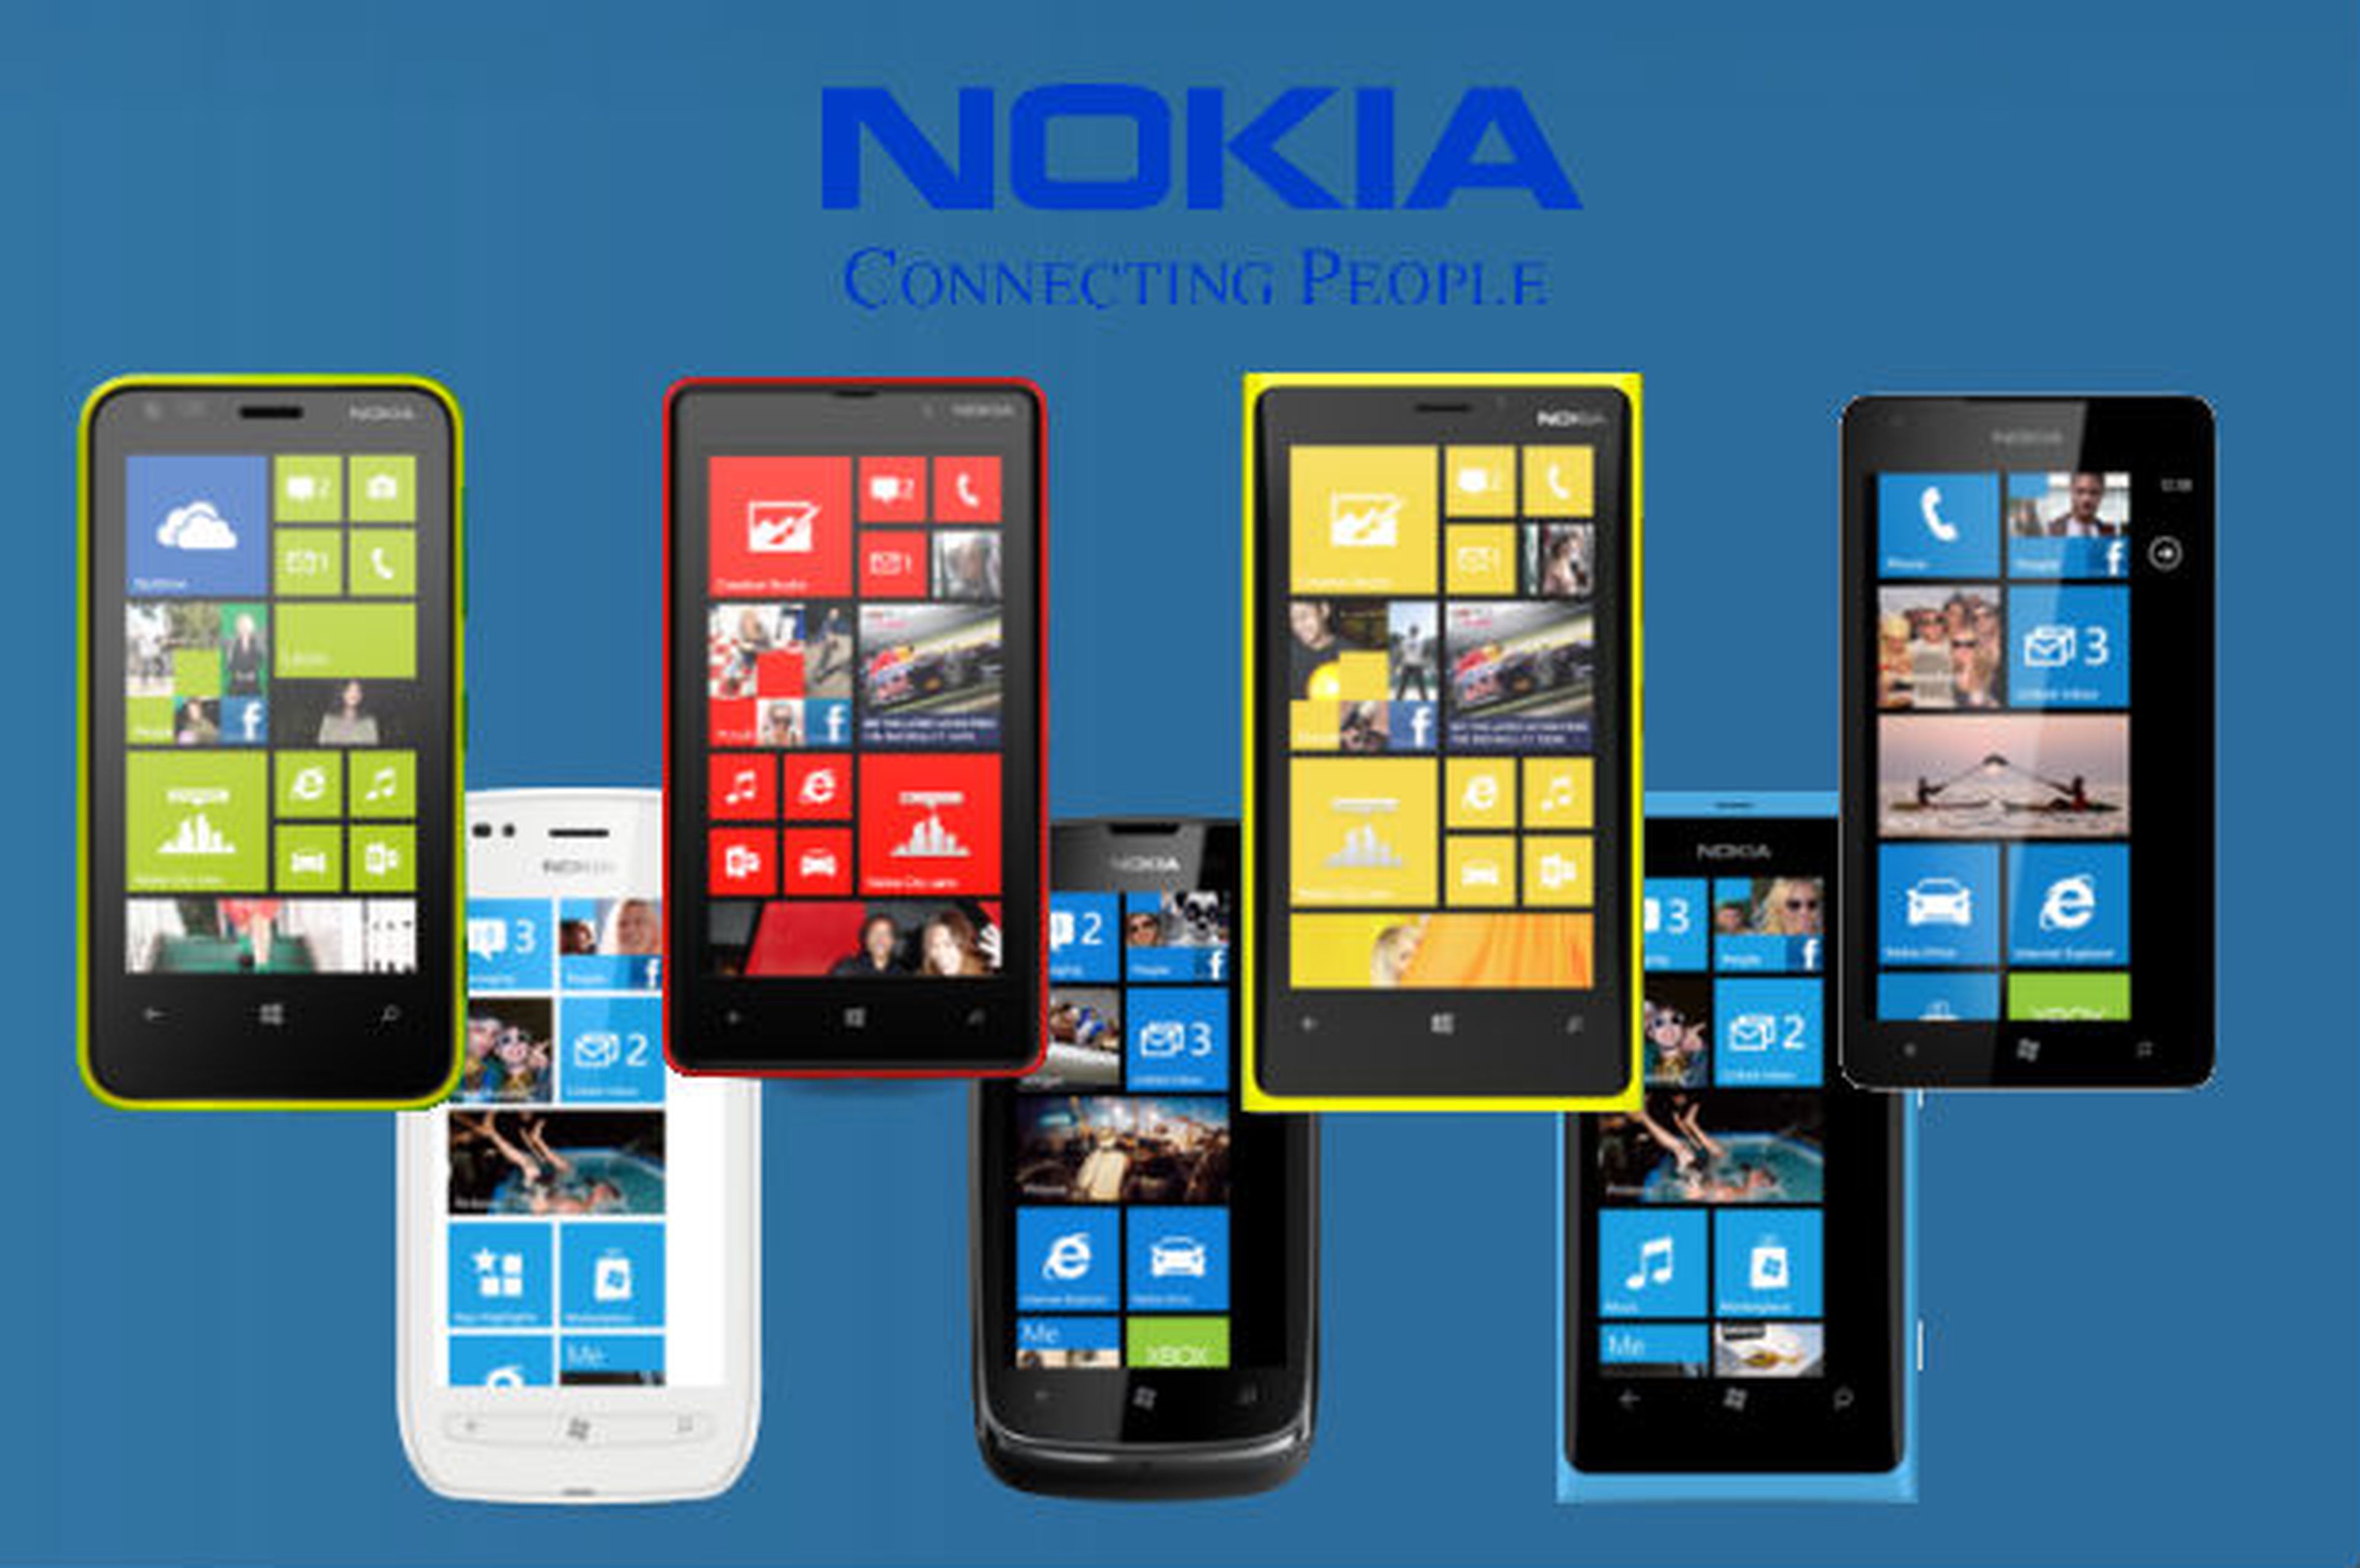 Familia Nokia